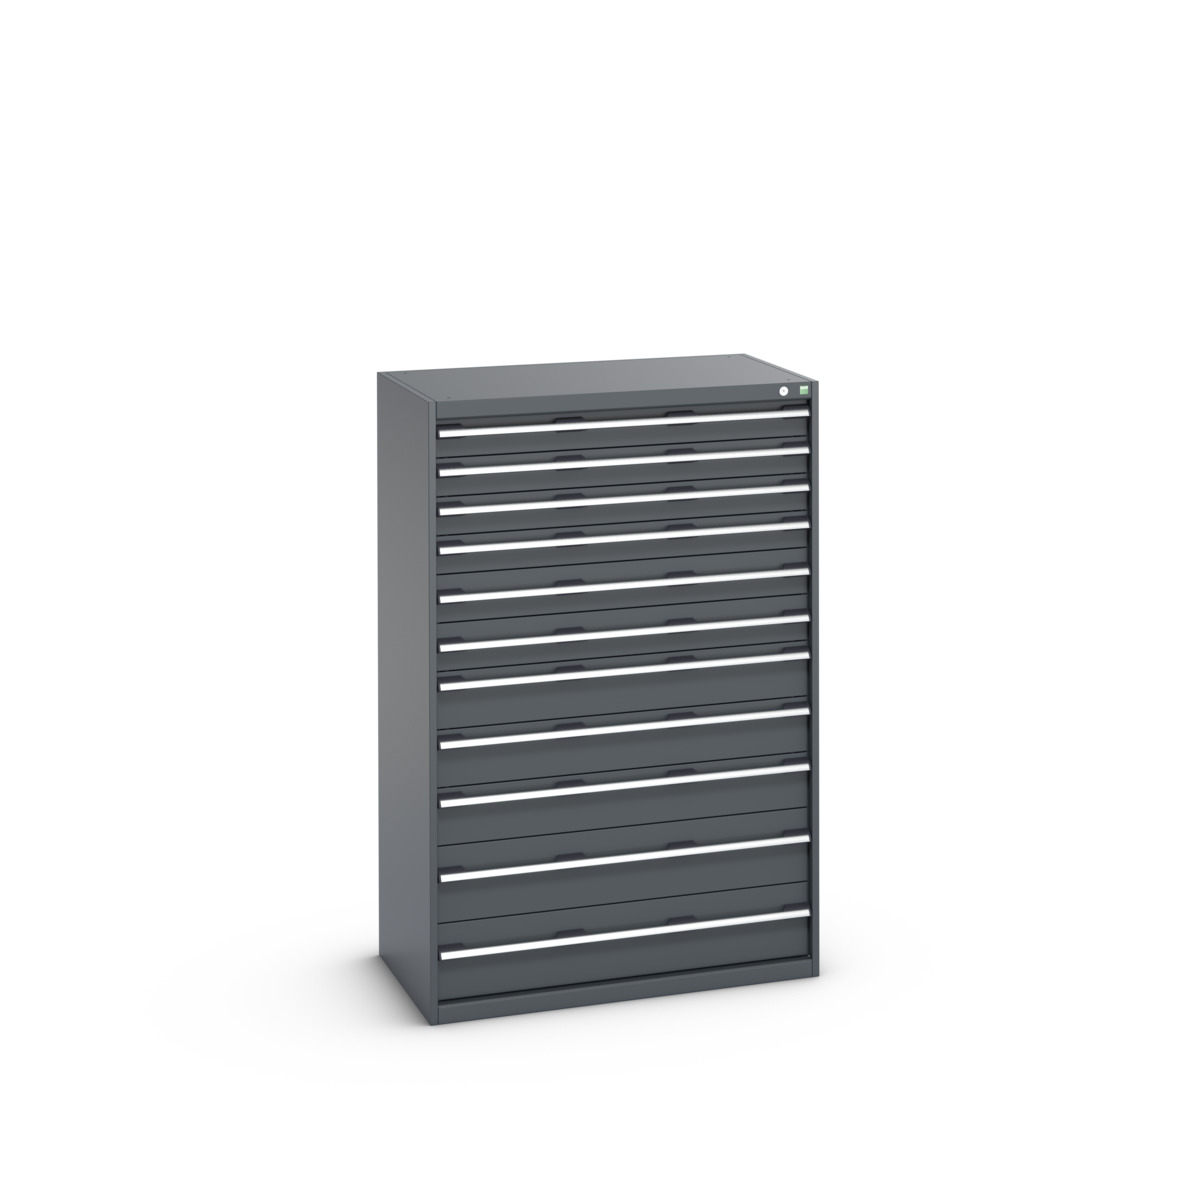 40021046.77V - cubio drawer cabinet